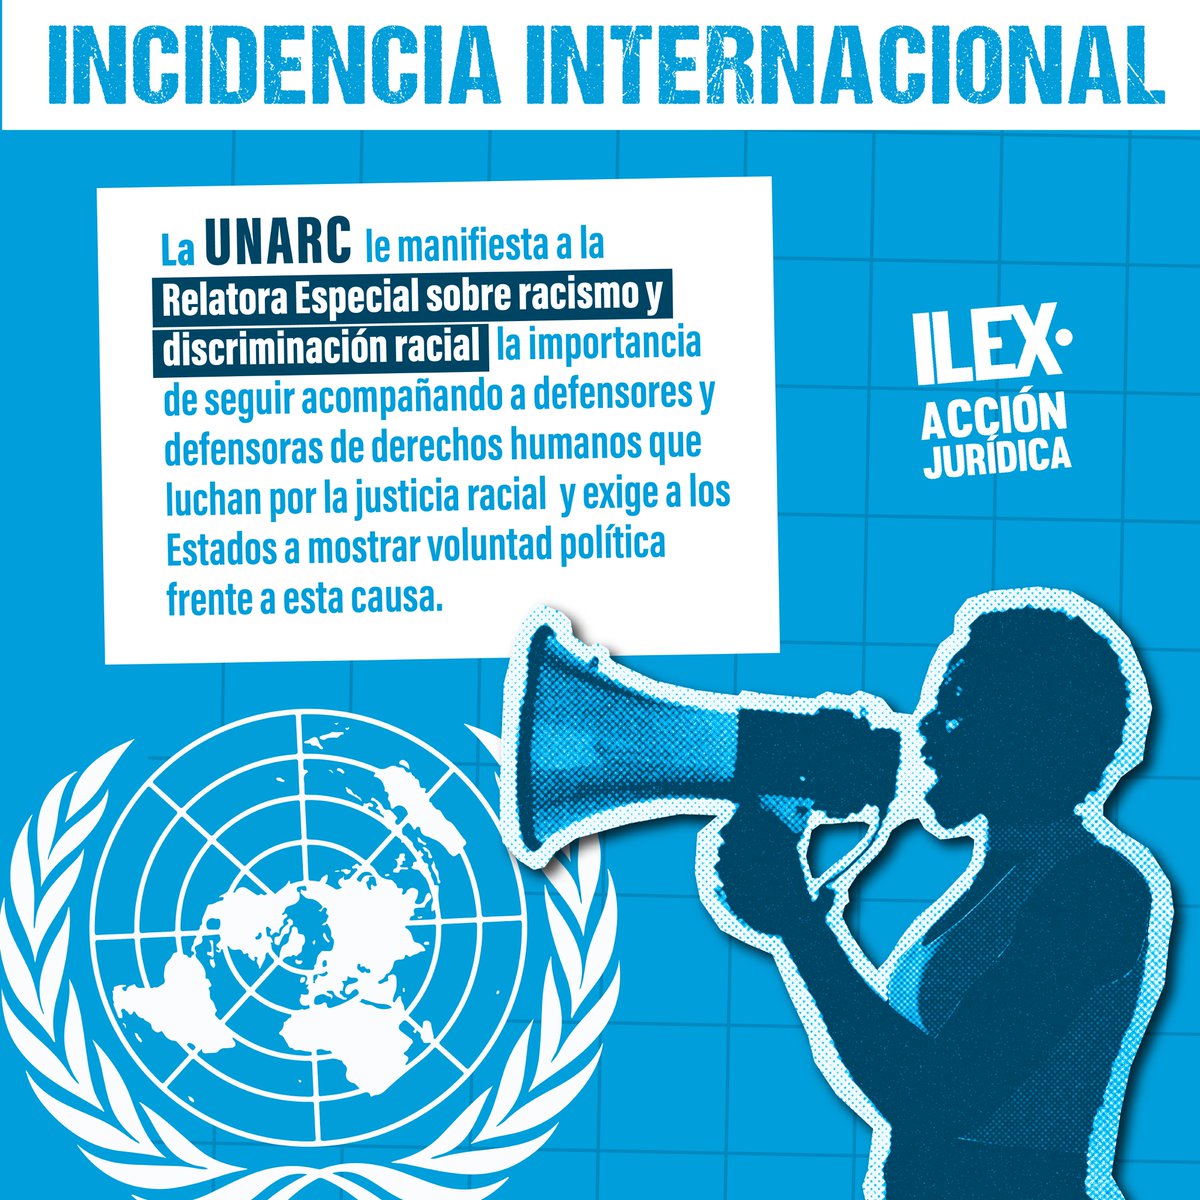 ILEX Acción Jurídica y organizaciones de la sociedad civil pertenecientes a la Coalición Antirracista UNARC presentaron declaración conjunta en la 53ª sesión del Consejo de Derechos Humanos de la ONU sobre el Diálogo Interactivo con el Relator Especial sobre el Racismo.